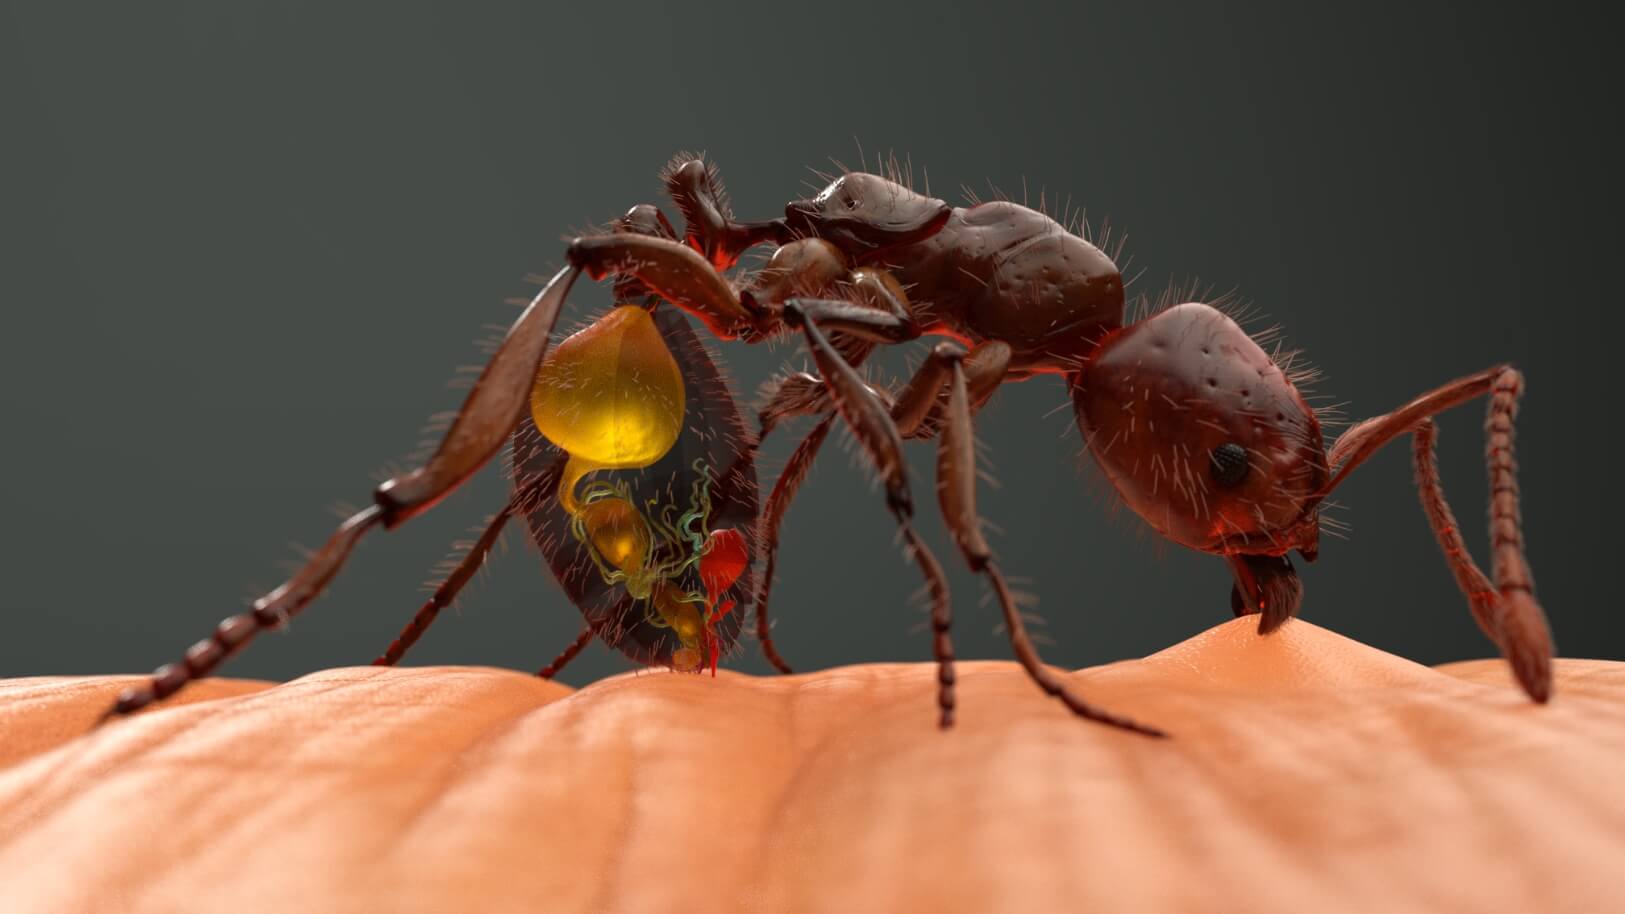 solenopsis ant 1 1 lt;pgt;Кауаи - четвертый по величине остров гавайского архипелага, который полностью покрыт тропическими лесами с высокой влажностью. В 1999 году на его территории были обнаружены огненные муравьи - насекомые, которые кусают все живое своими мощными челюстями и впрыскивают в раны сильный яд. Ощущения от укуса муравьев сравниваются с ожогом от пламени, поэтому этих насекомых и называют „огненными“. Недавно опасных насекомых на острове Кауаи стало катастрофически много, ситуация в ближайшее время может усугубиться. Сообщается, что нашествие муравьев стало причиной кардинальных перемен в жизни местного населения. Давайте разберемся, какие проблемы доставляют людям эти крошечные существа и что будет, если с ними не удастся справиться.